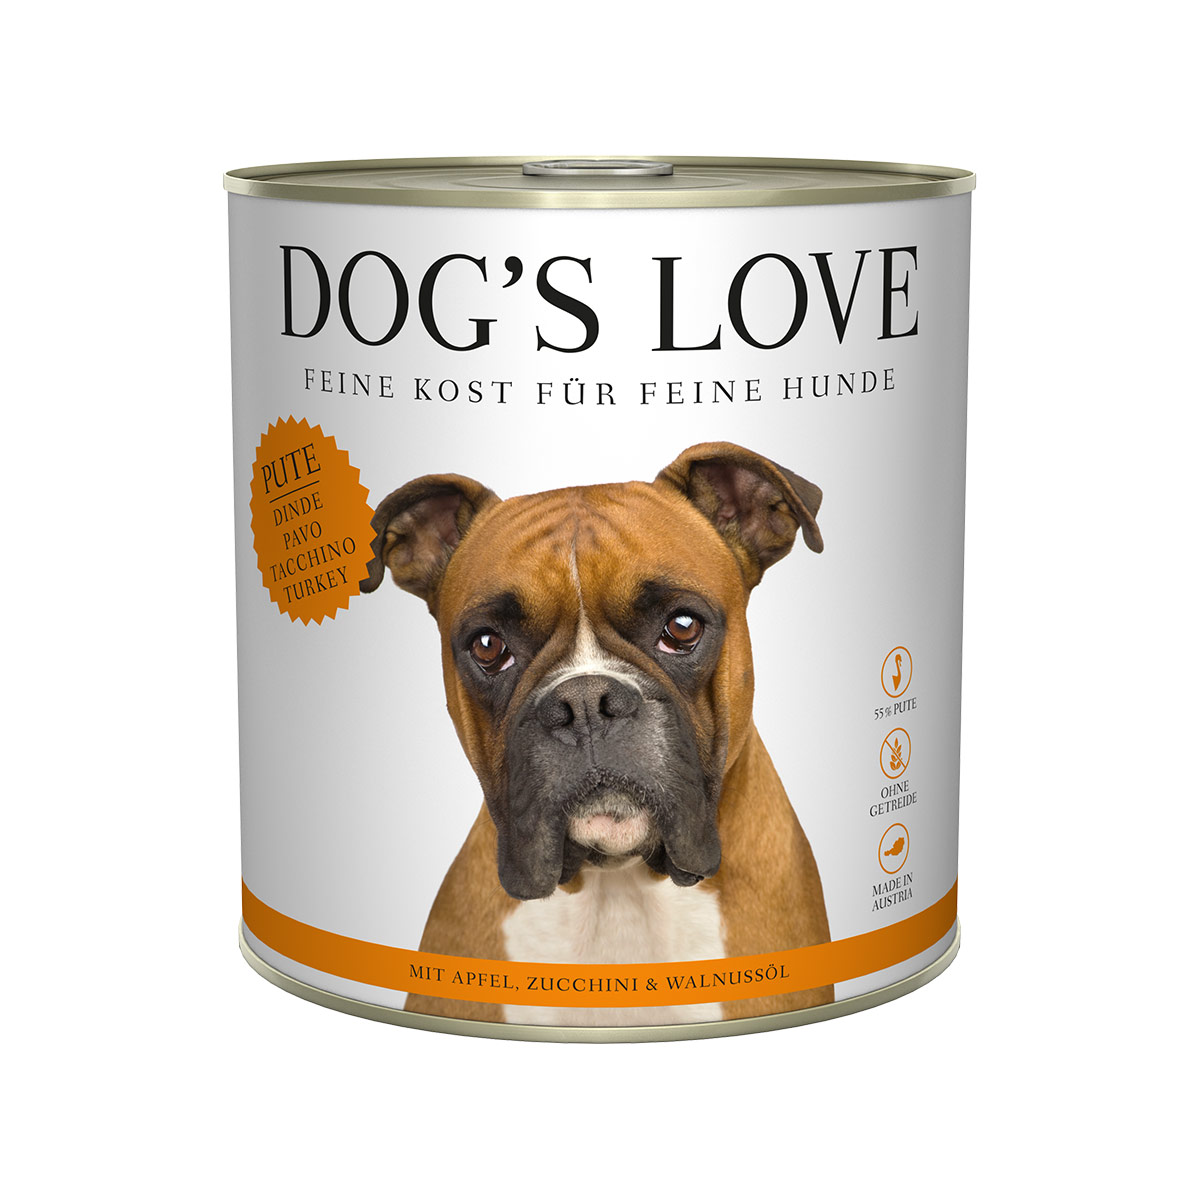 Dog's Love Classic krůtí maso s jablkem, cuketou a olejem z vlašských ořechů 12x800g